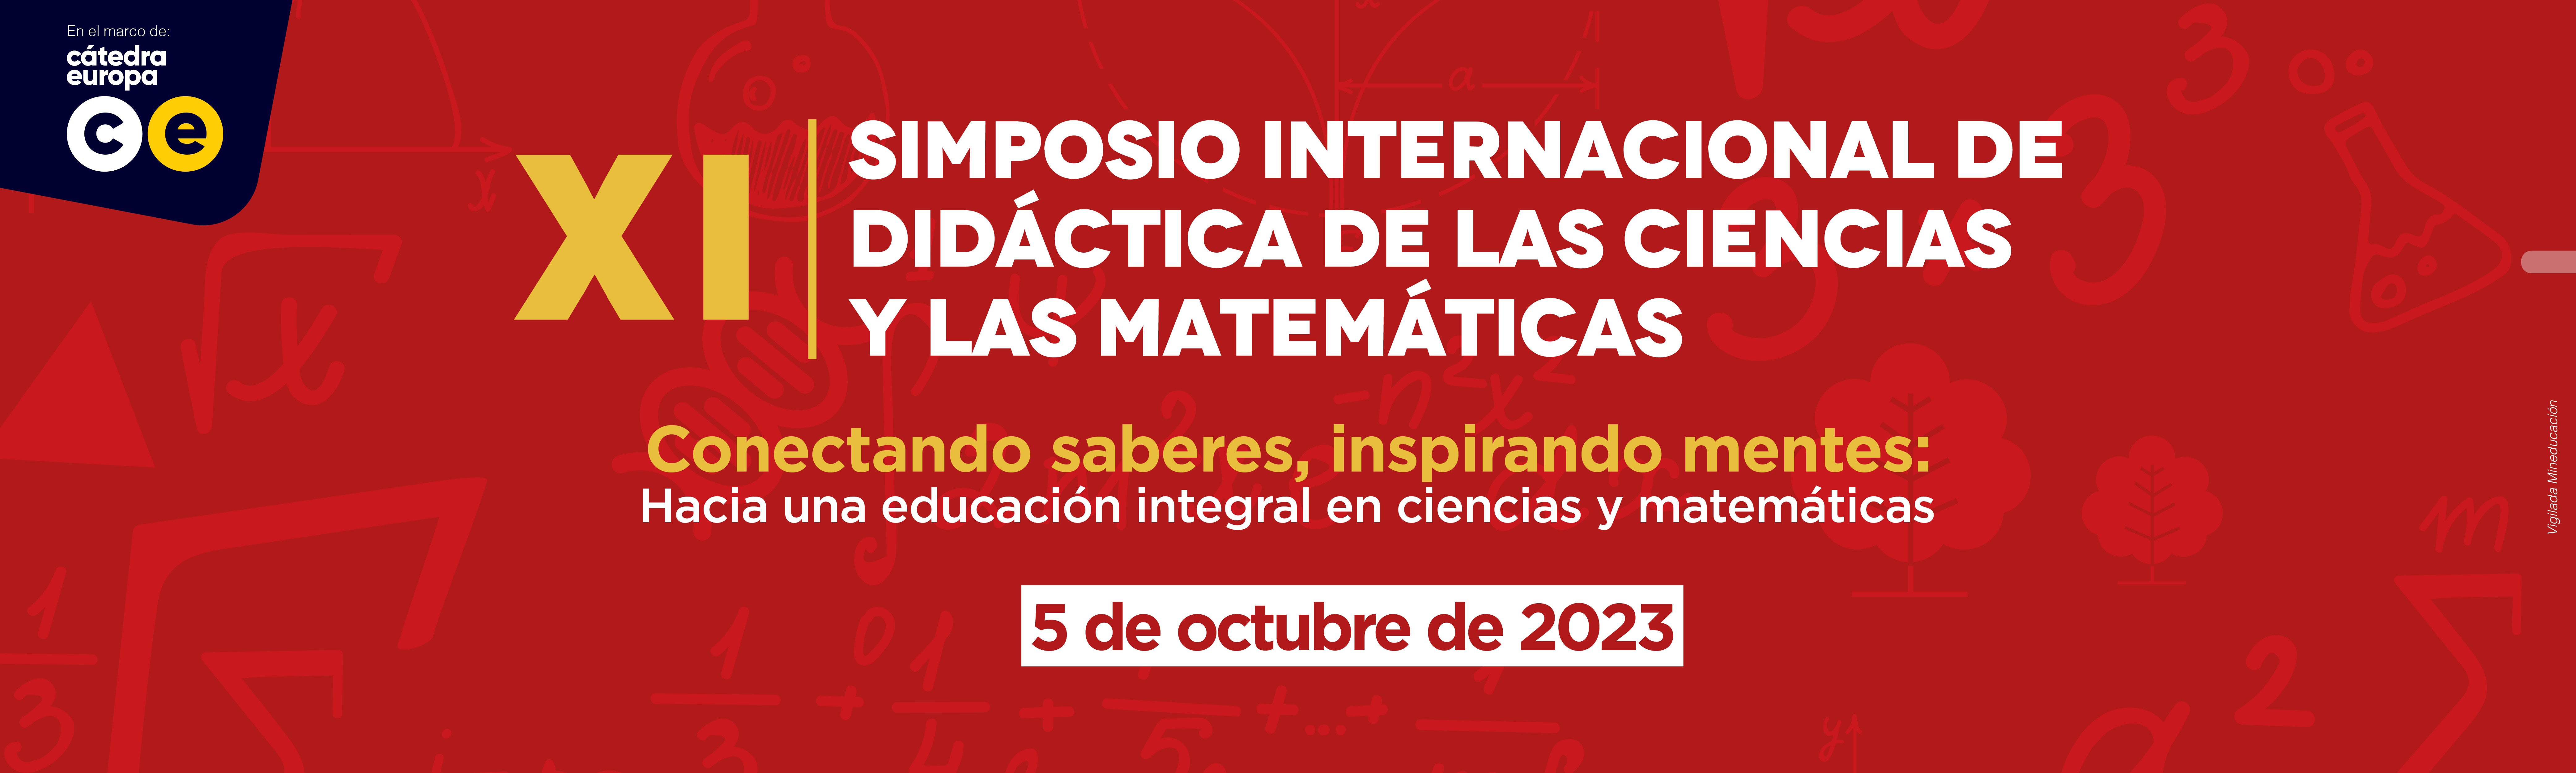 Simposio Didactica Ciencias y Matematicas  Banner.jpg